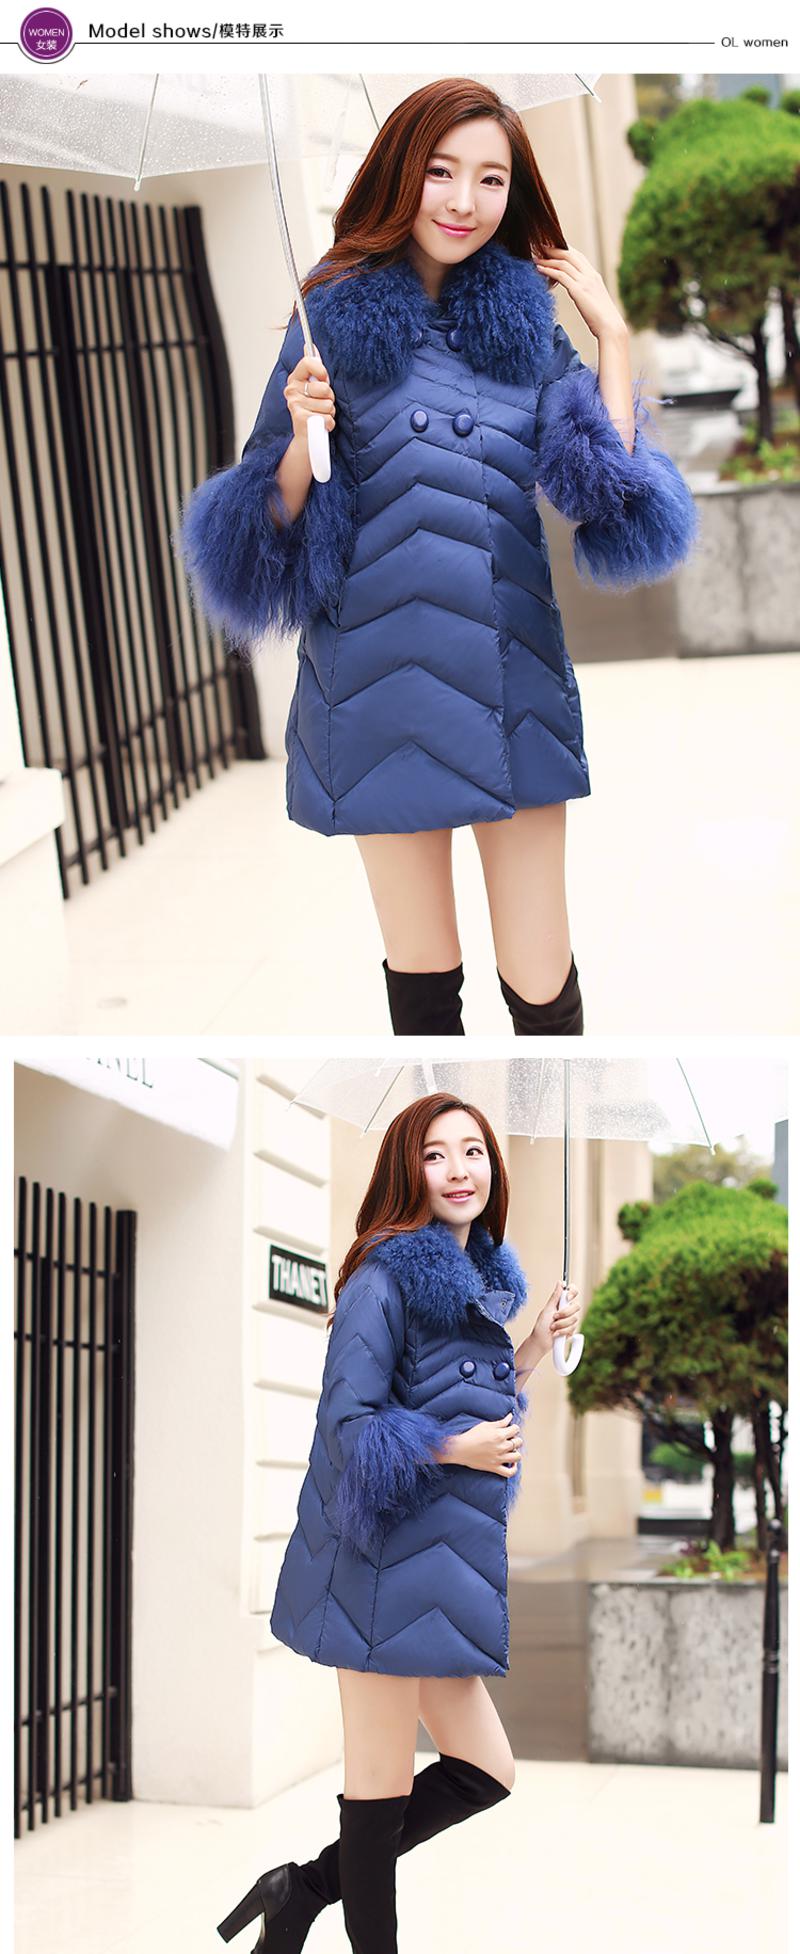 JEANE-SUNP2016冬装韩版修身加厚羽绒服滩羊毛领中长款七分袖羽绒衣女外套潮